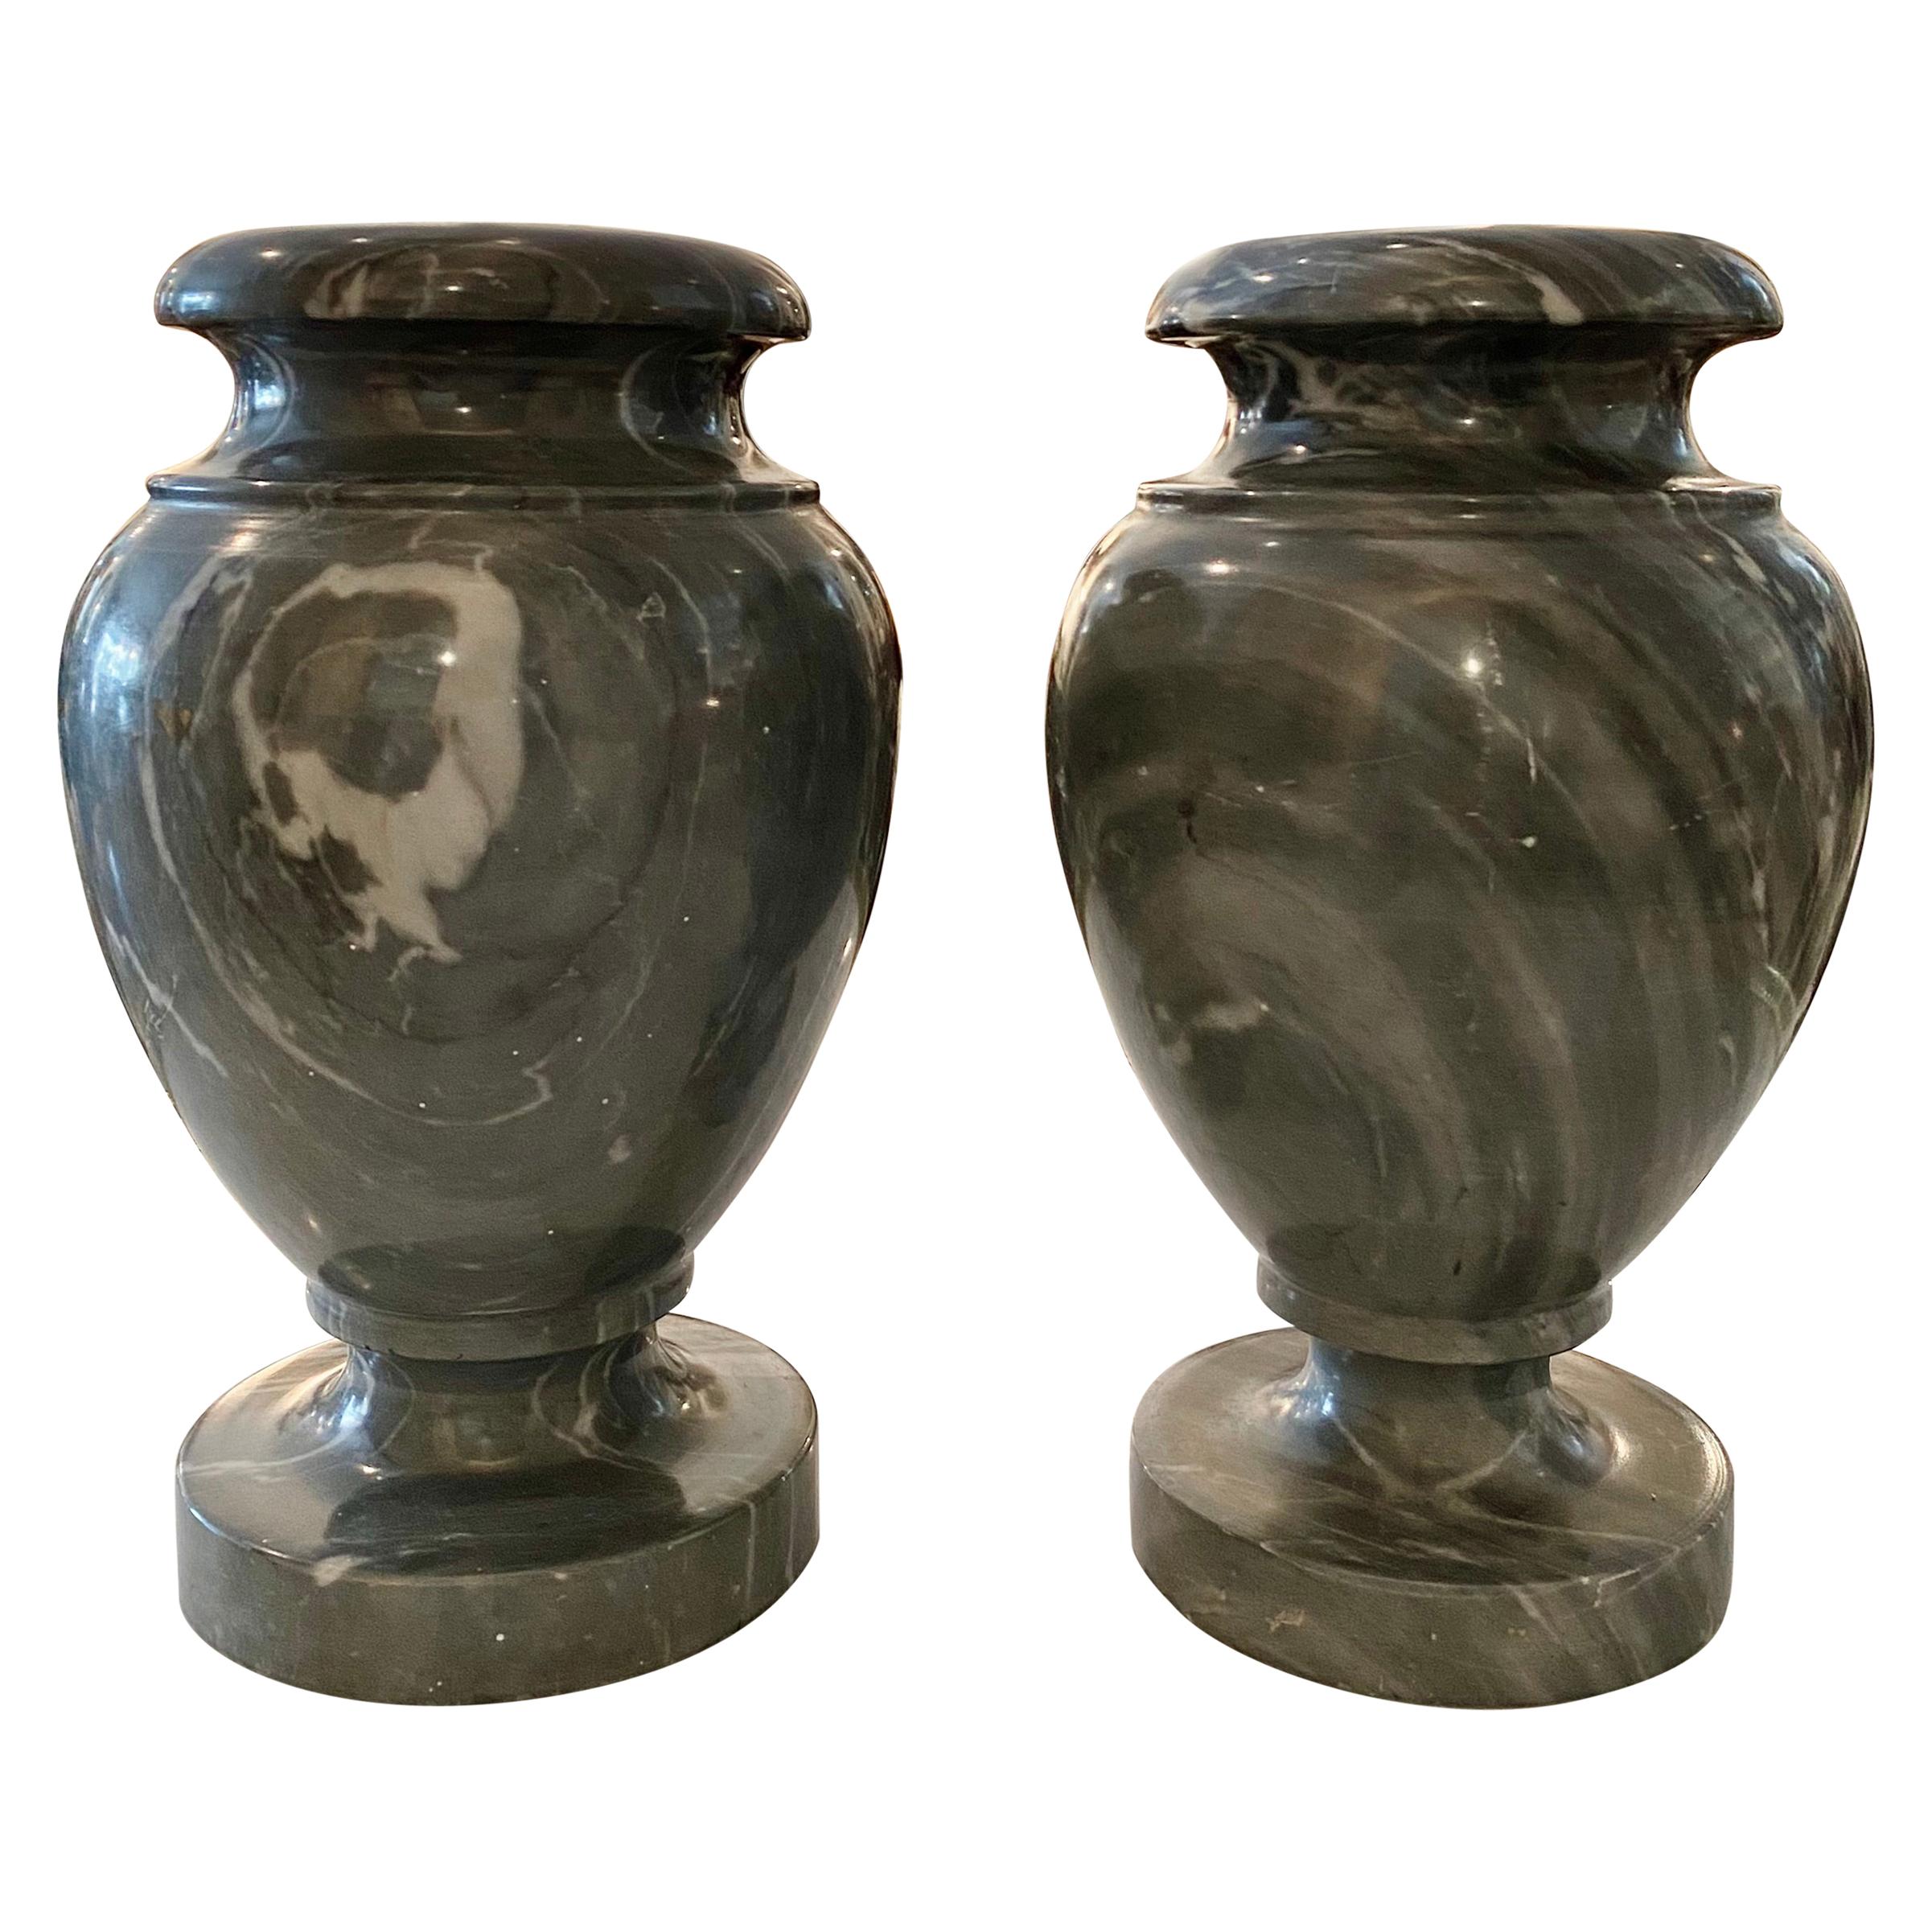 Paire d'urnes néoclassiques françaises en marbre gris de style néoclassique